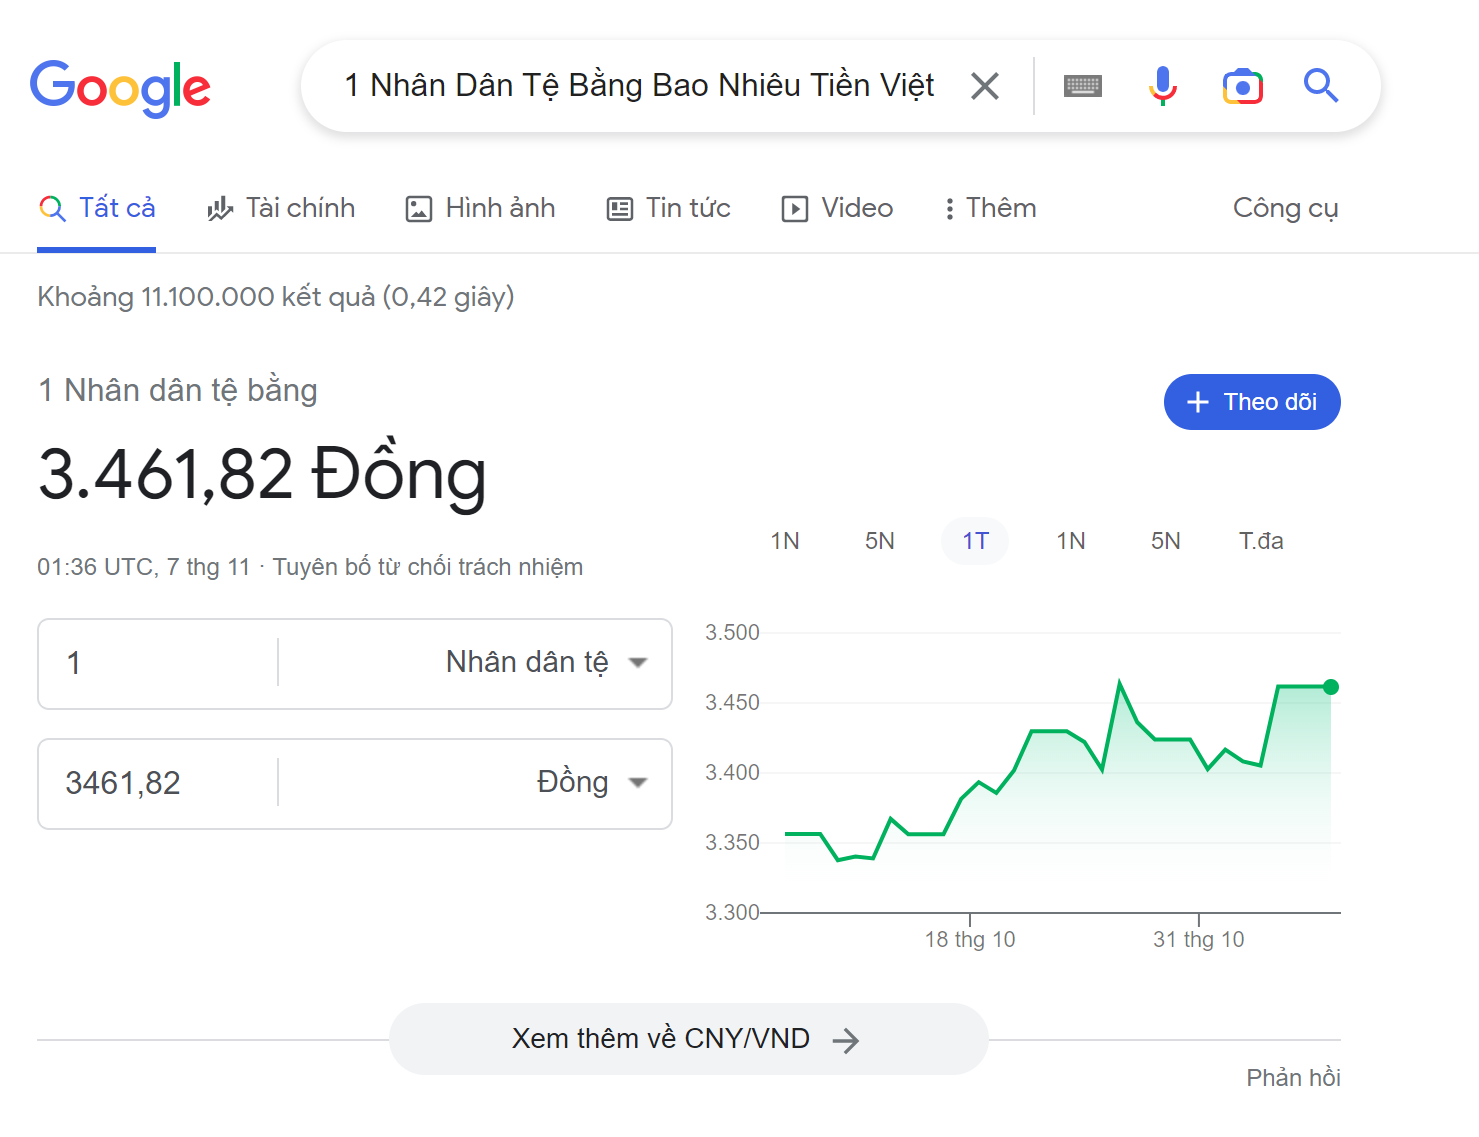 Cách quy đổi 1 Nhân Dân Tệ bằng bao nhiêu tiền Việt Nam nhanh qua Google